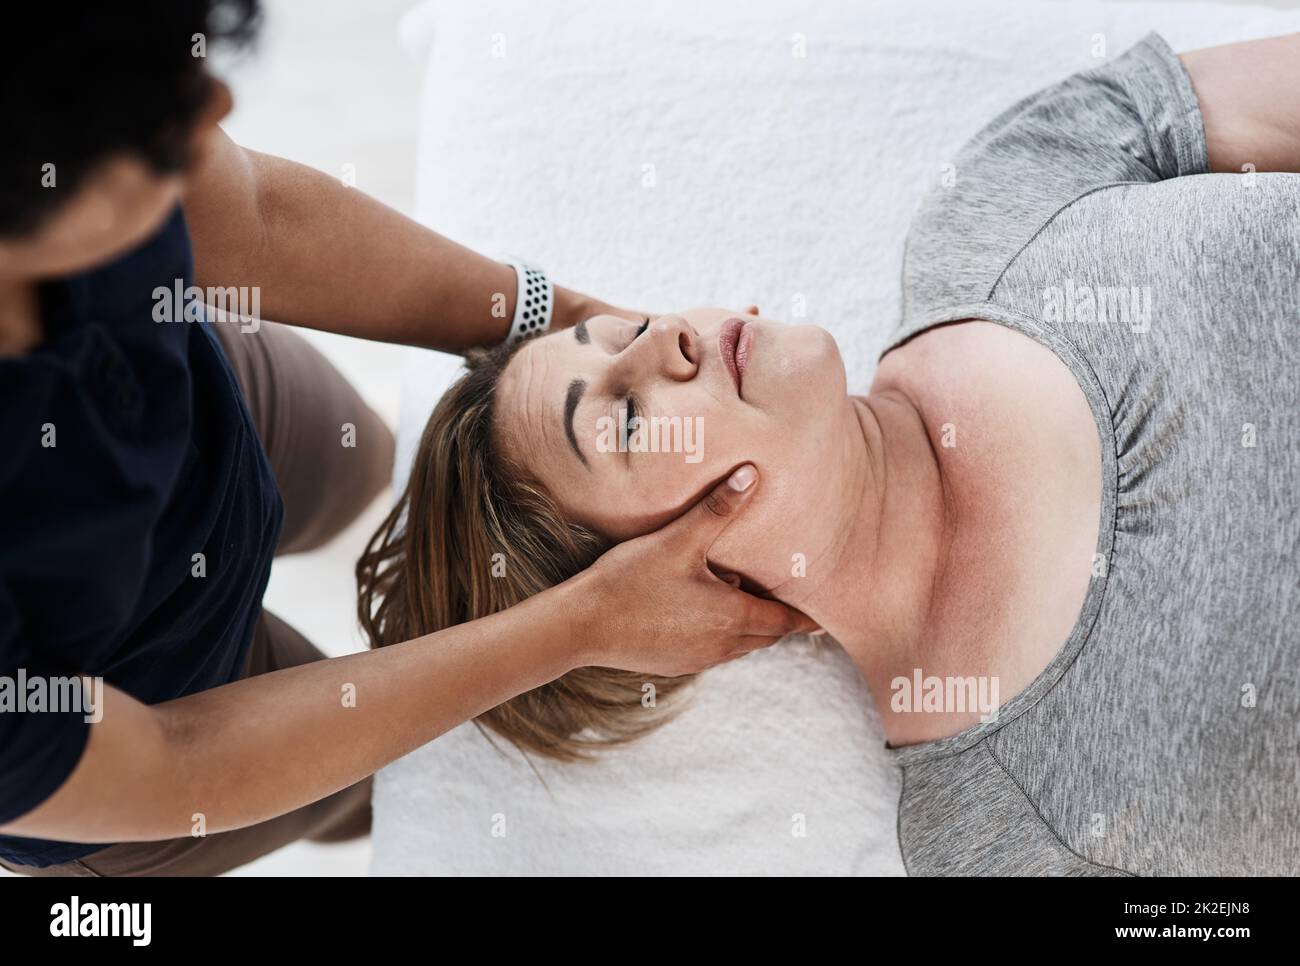 Massage Neck Woman Spa Salon Stock Photo 239918485